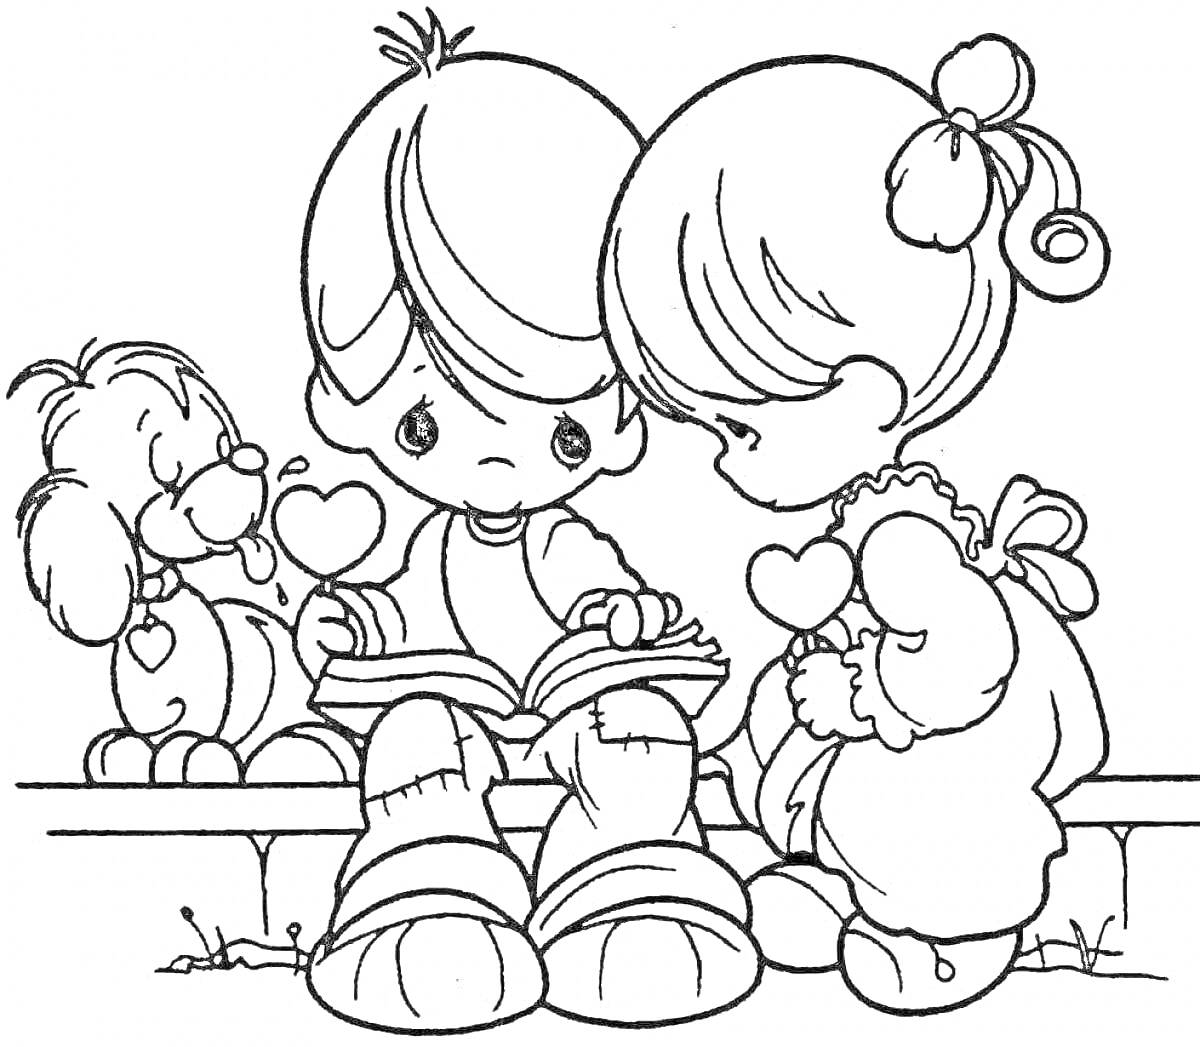 Раскраска Мальчик и девочка с сердечками, читающие книгу на скамейке, рядом сидит собака